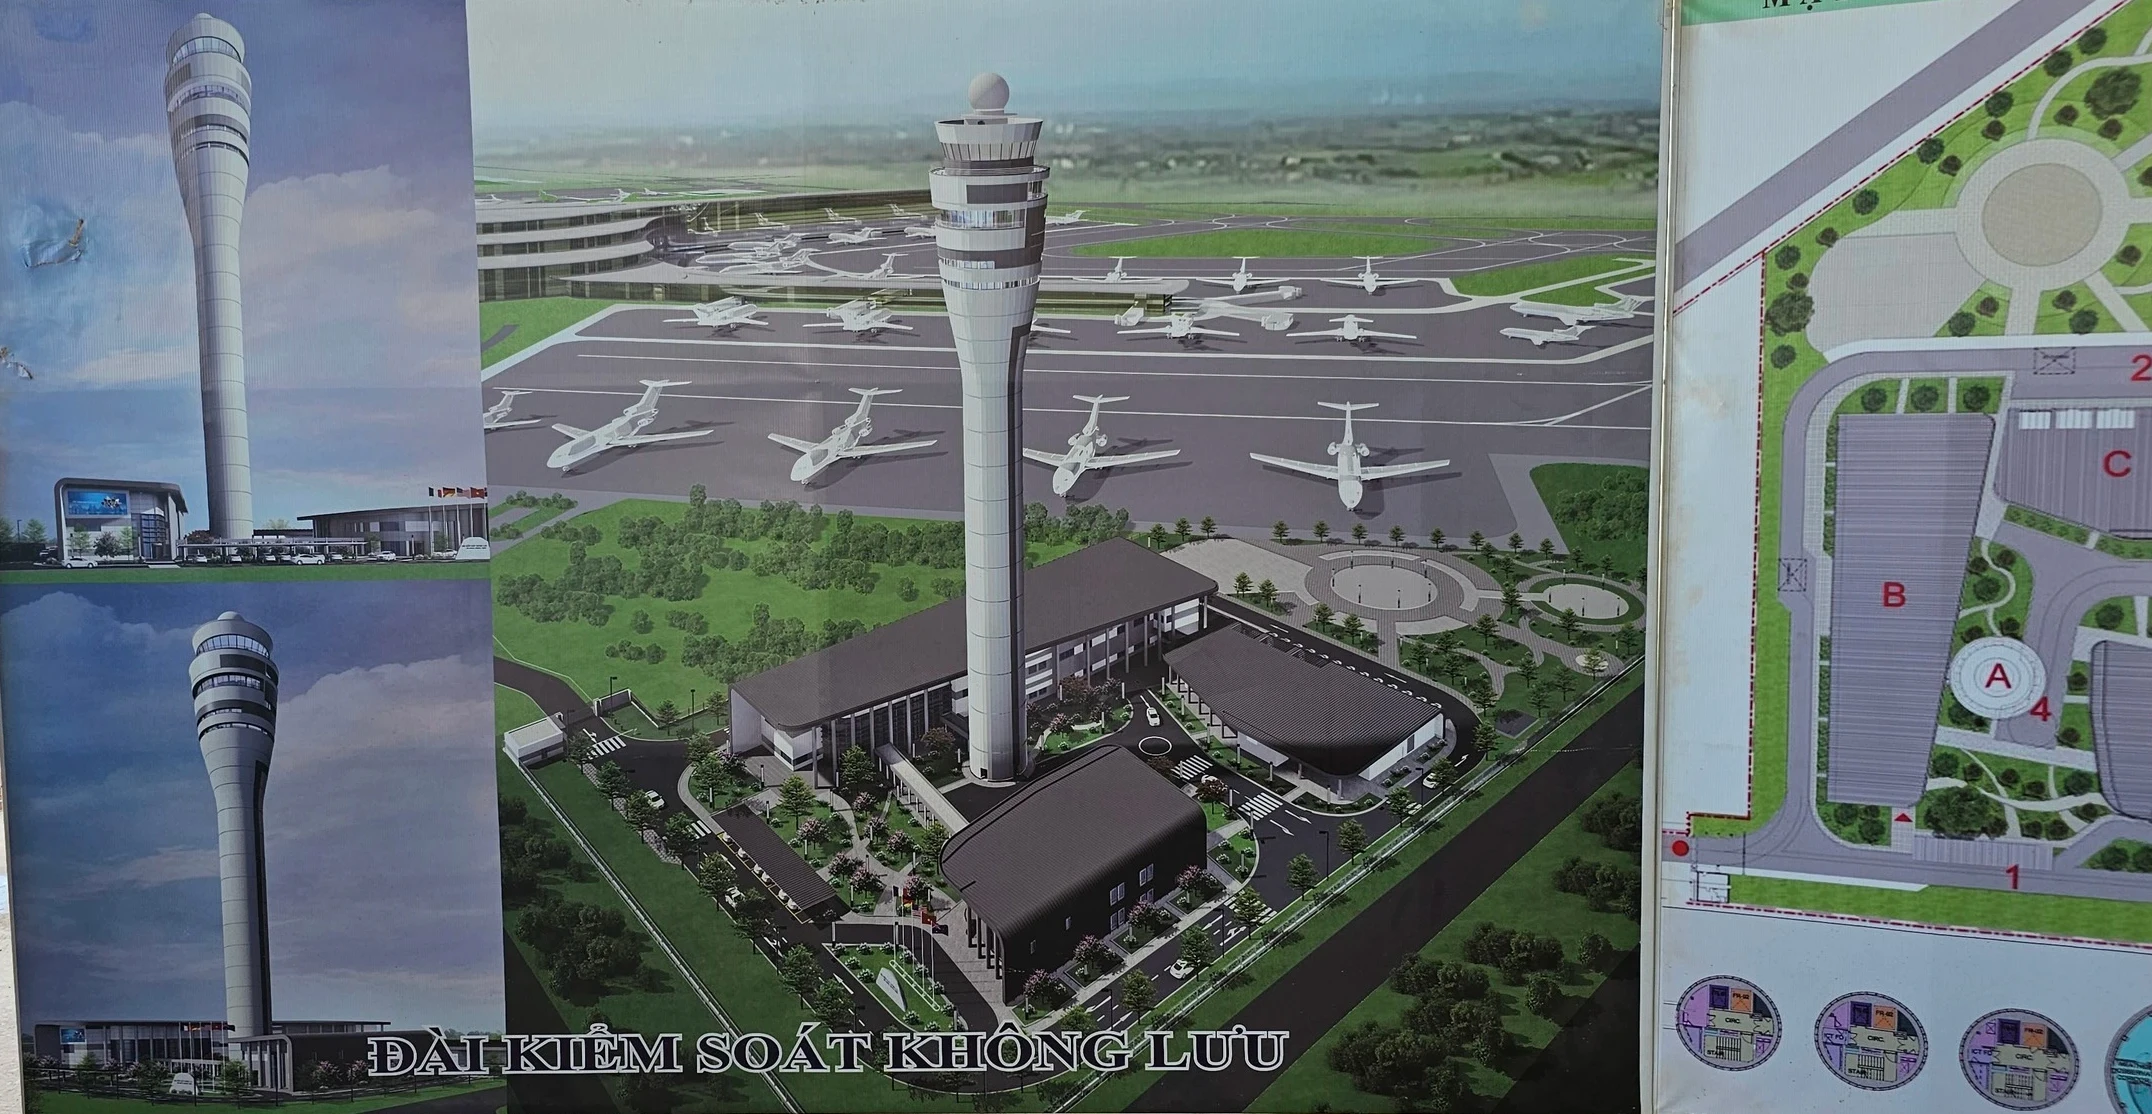 Sân bay Long Thành: Đài kiểm soát không lưu hình búp sen đang thi công ra sao?